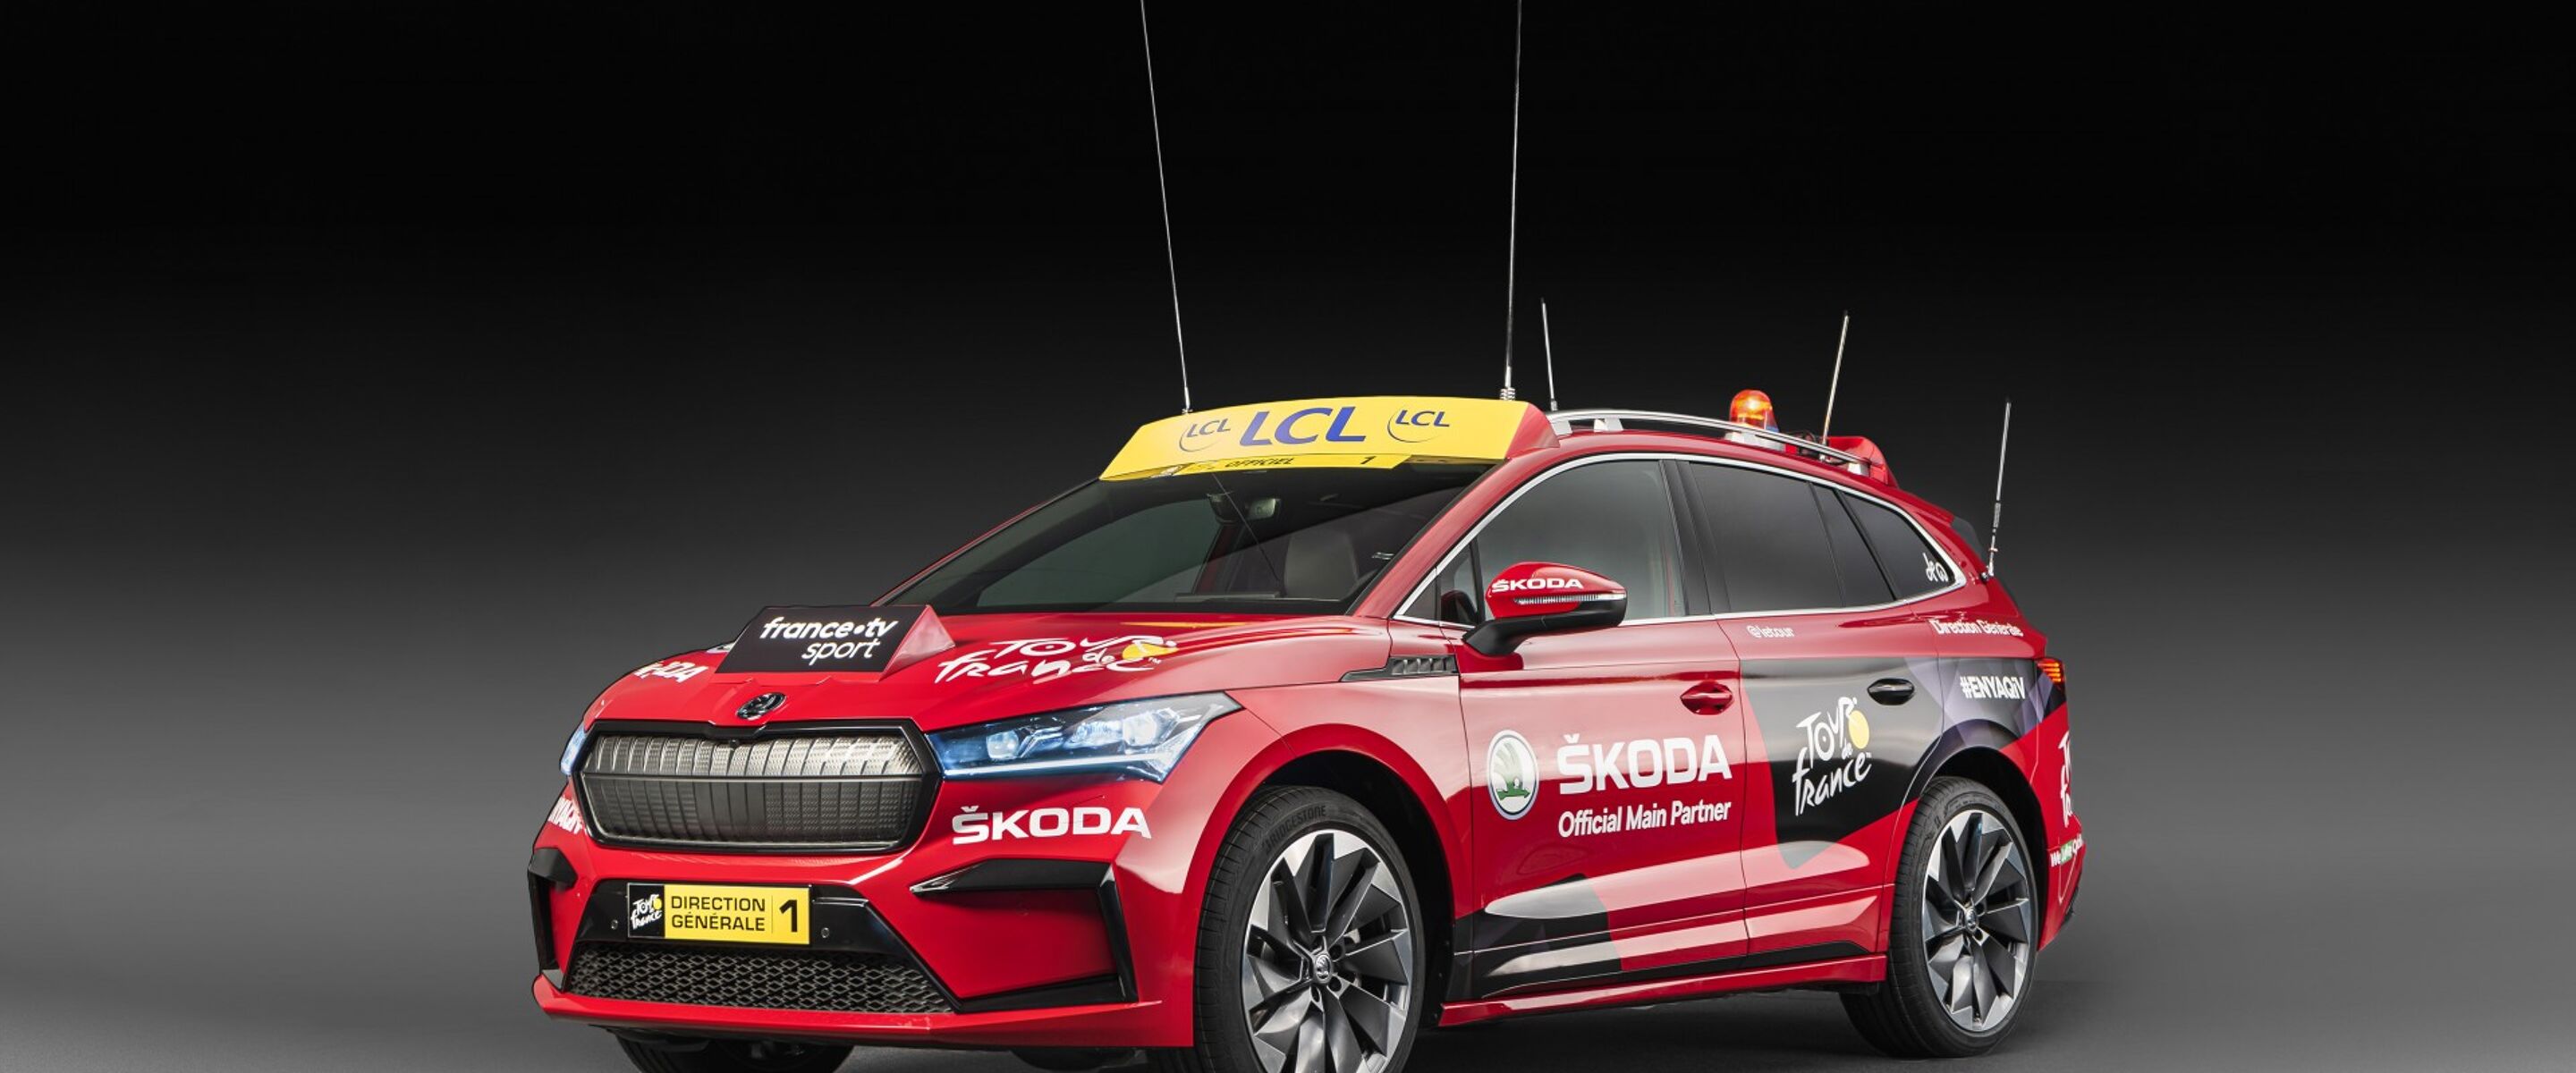 Škoda Auto voor 19e maal hoofdsponsor van de Tour de France